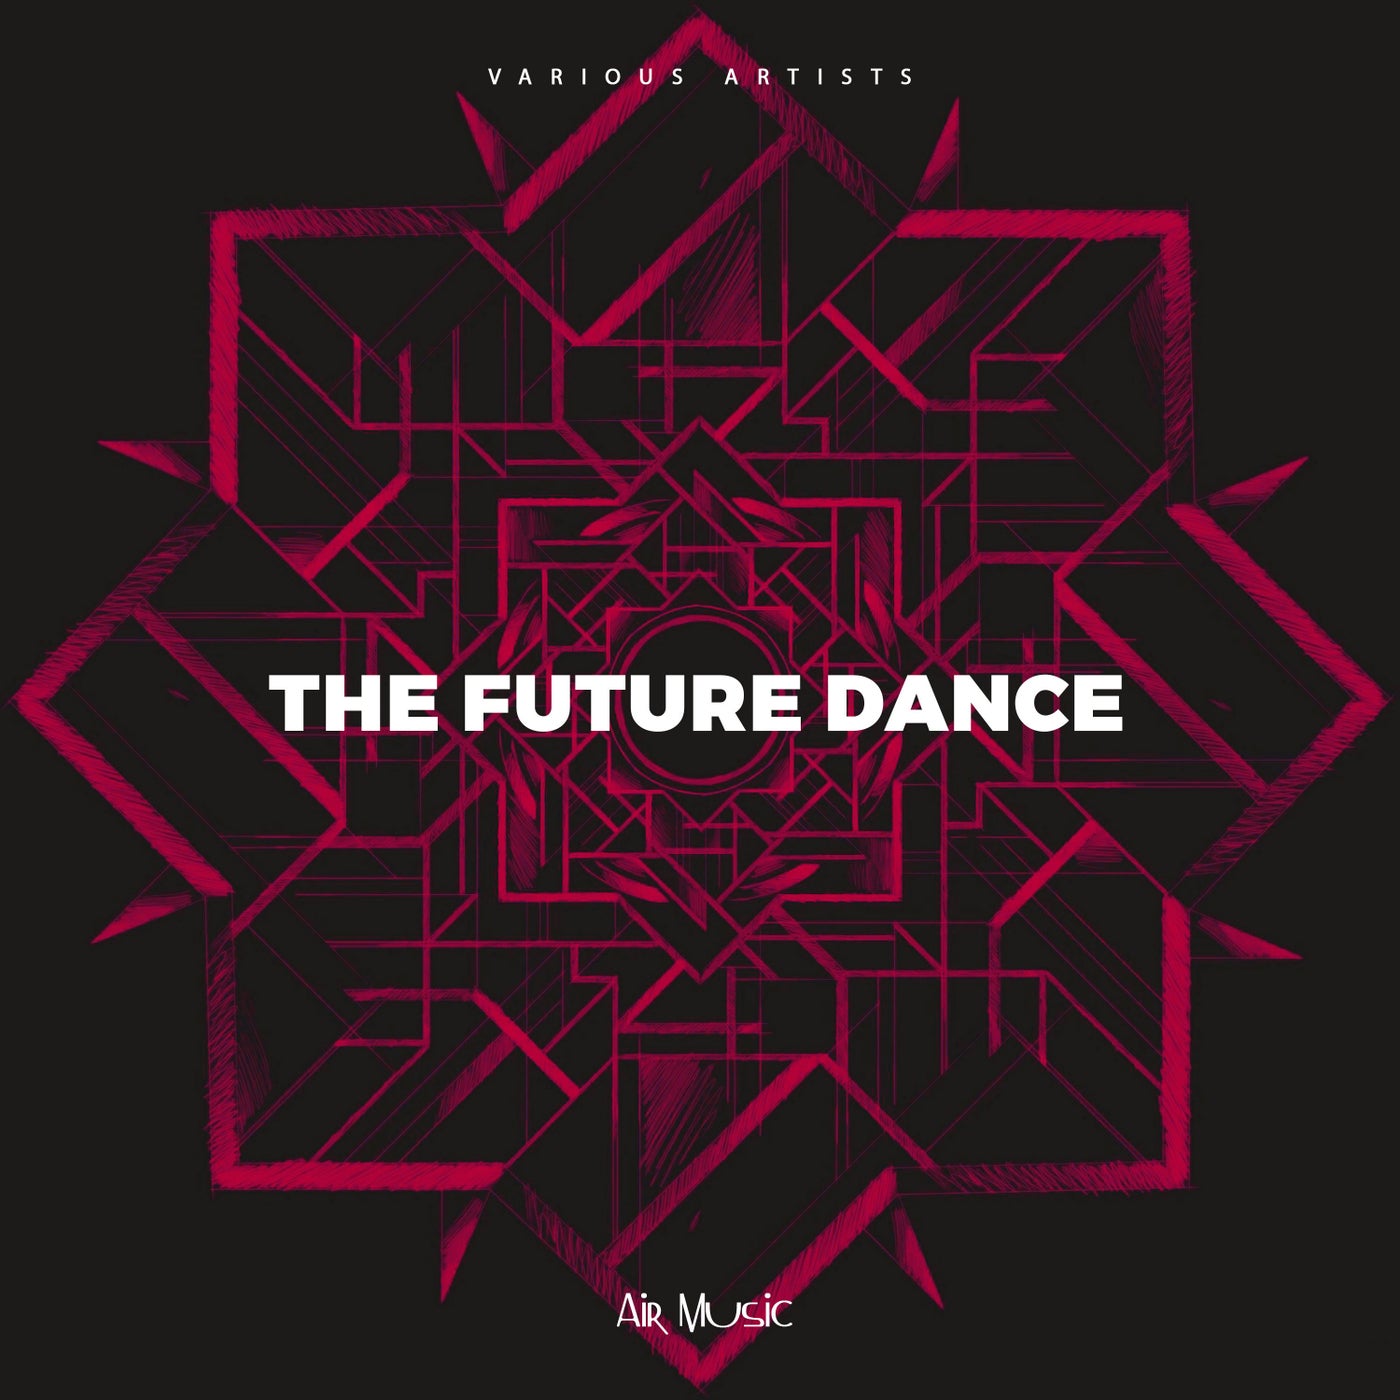 The Future Dance